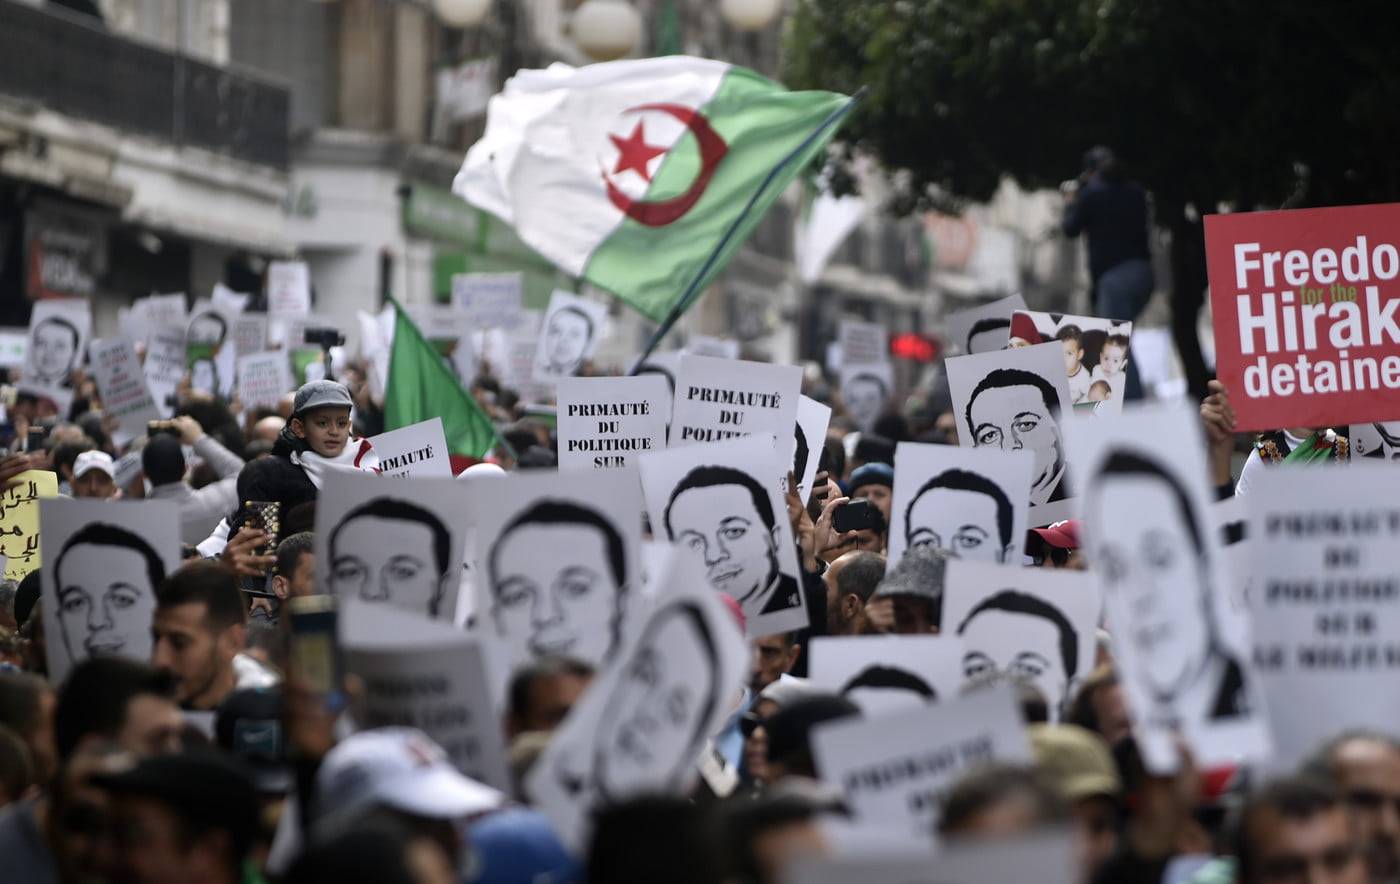 manifestants-algeriens-brandissent-portrait-Ramdane-Abane-ancien-dirigeant-mouvement-independance-27-decembre-2019-Alger_0_1400_884